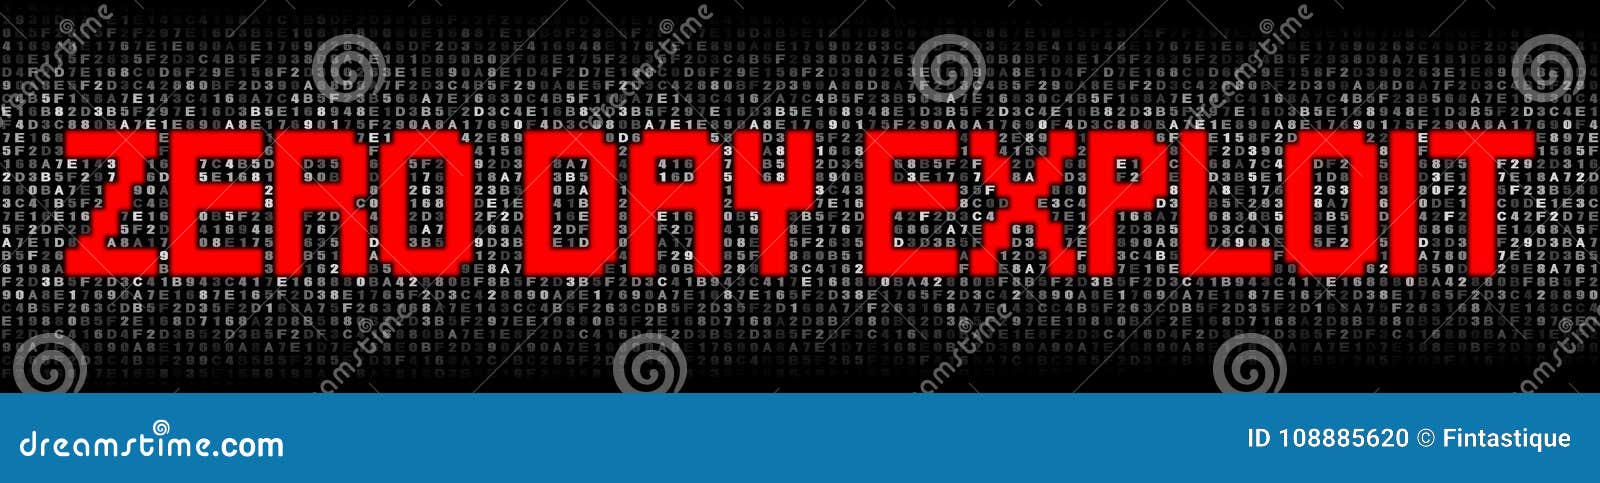 zero day exploit text on hex code 